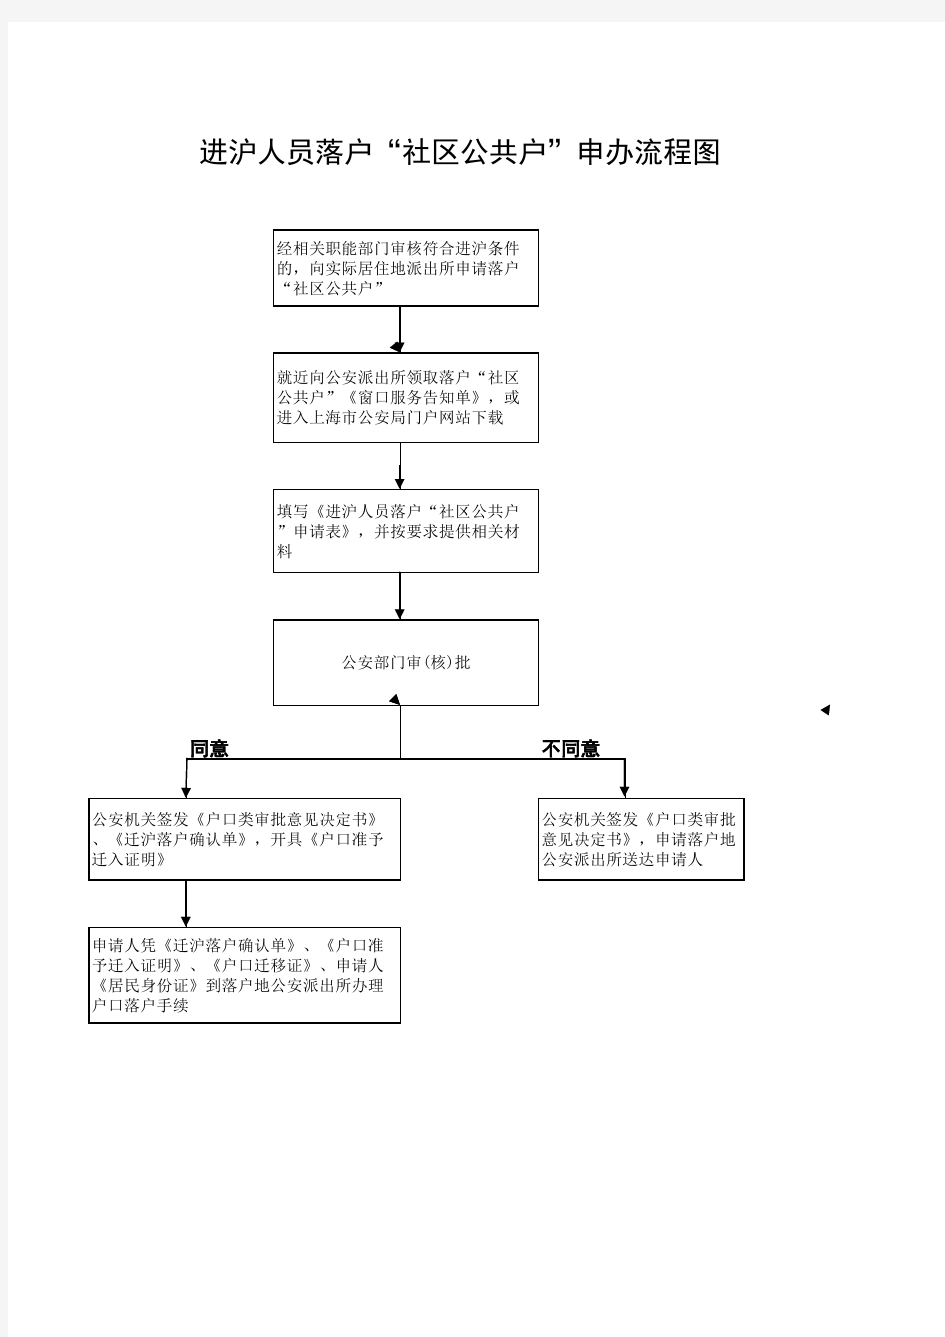 上海落户流程(公安局申请部分)